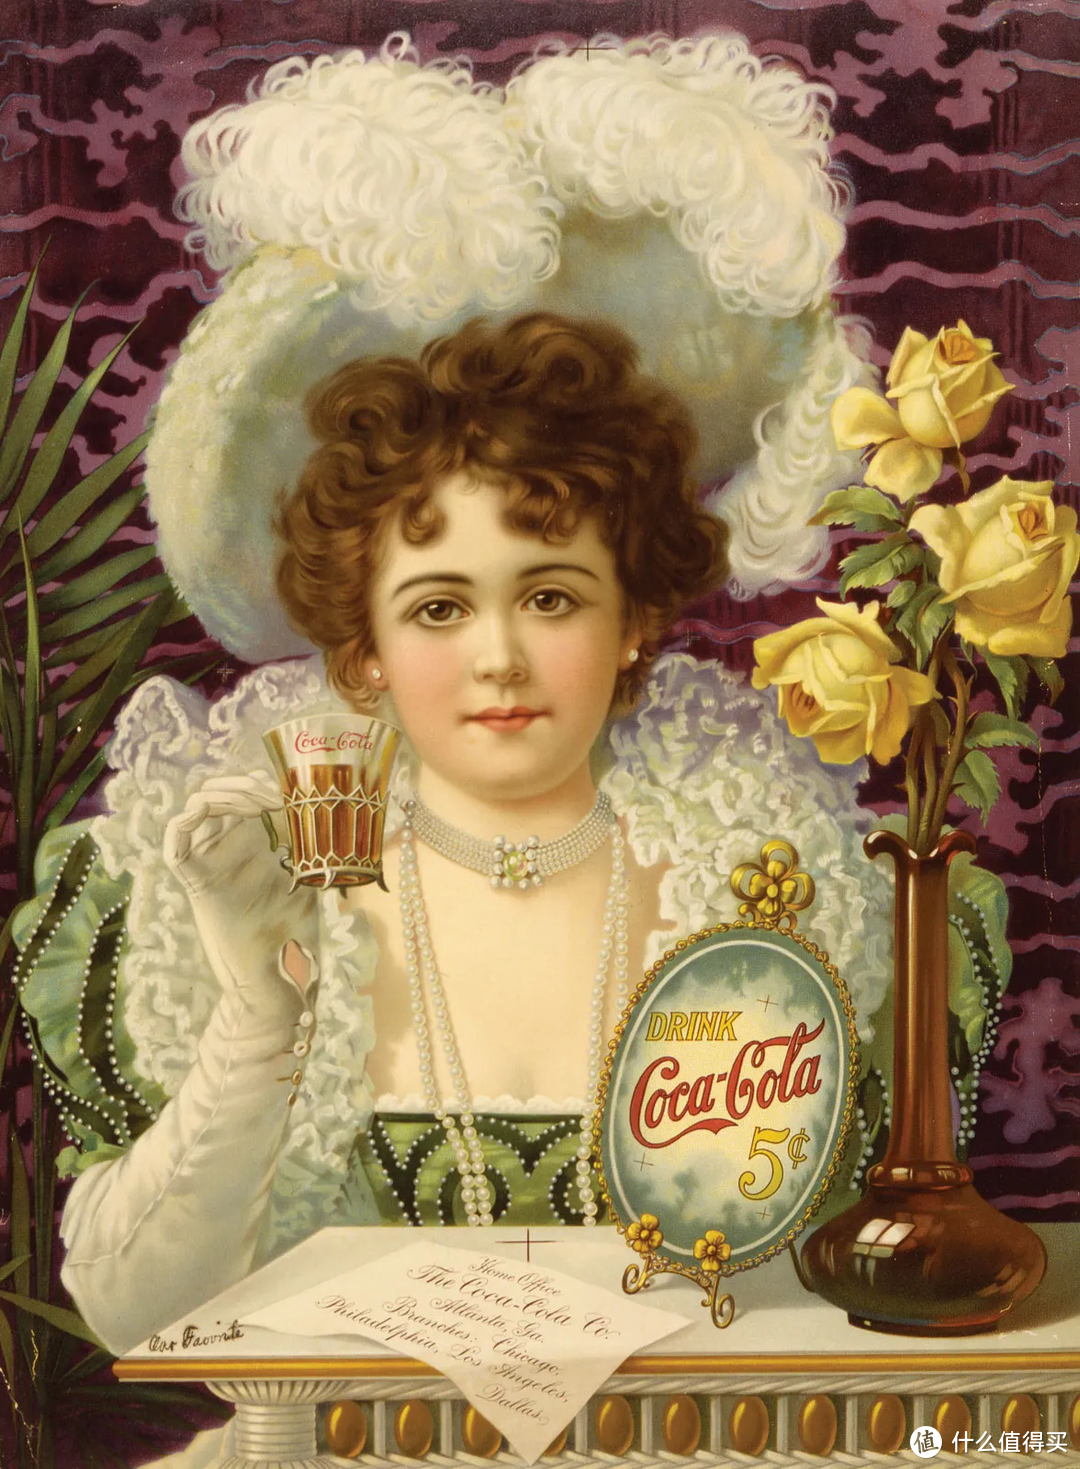 可口可乐广告，约1890年代